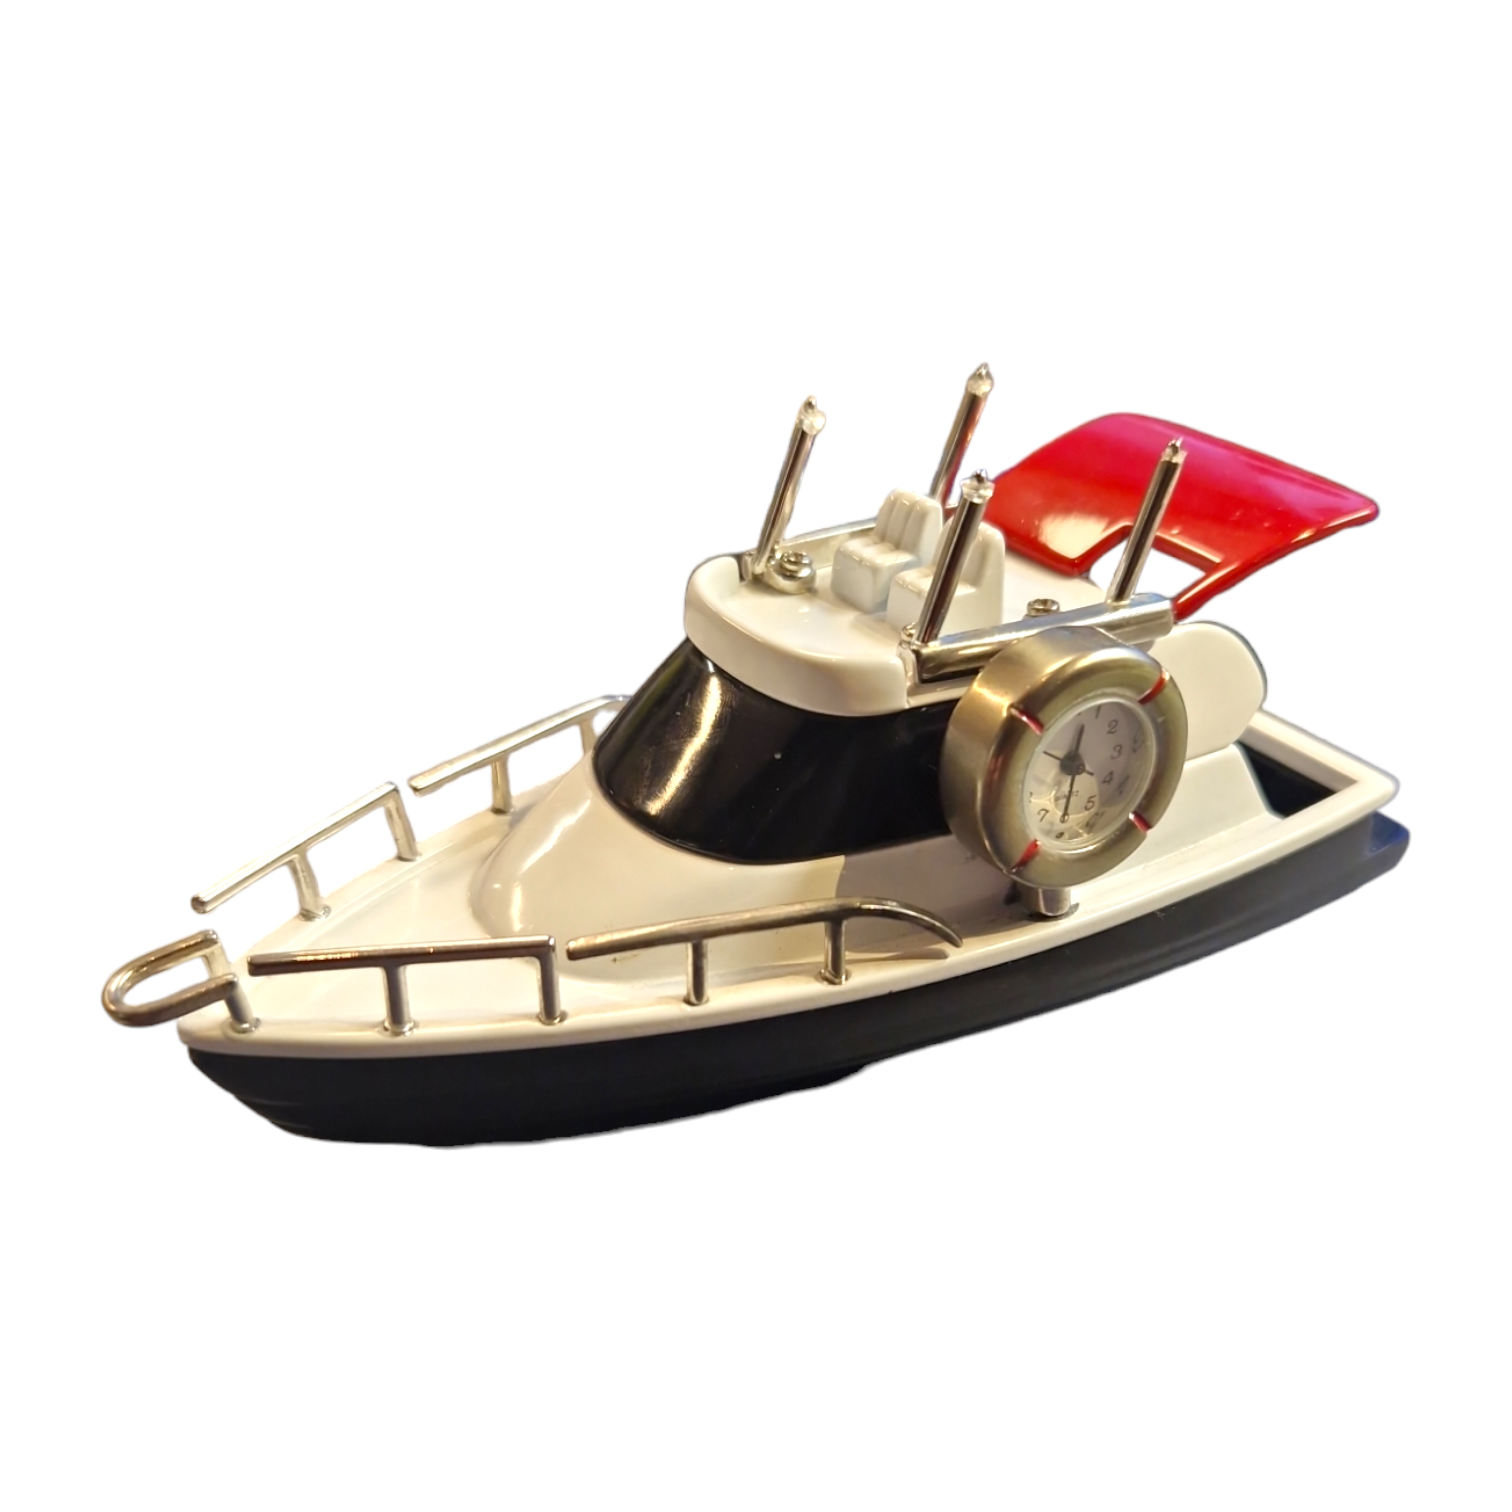 Miniatur-Uhr Yacht - Miniatur Wunderland Shop